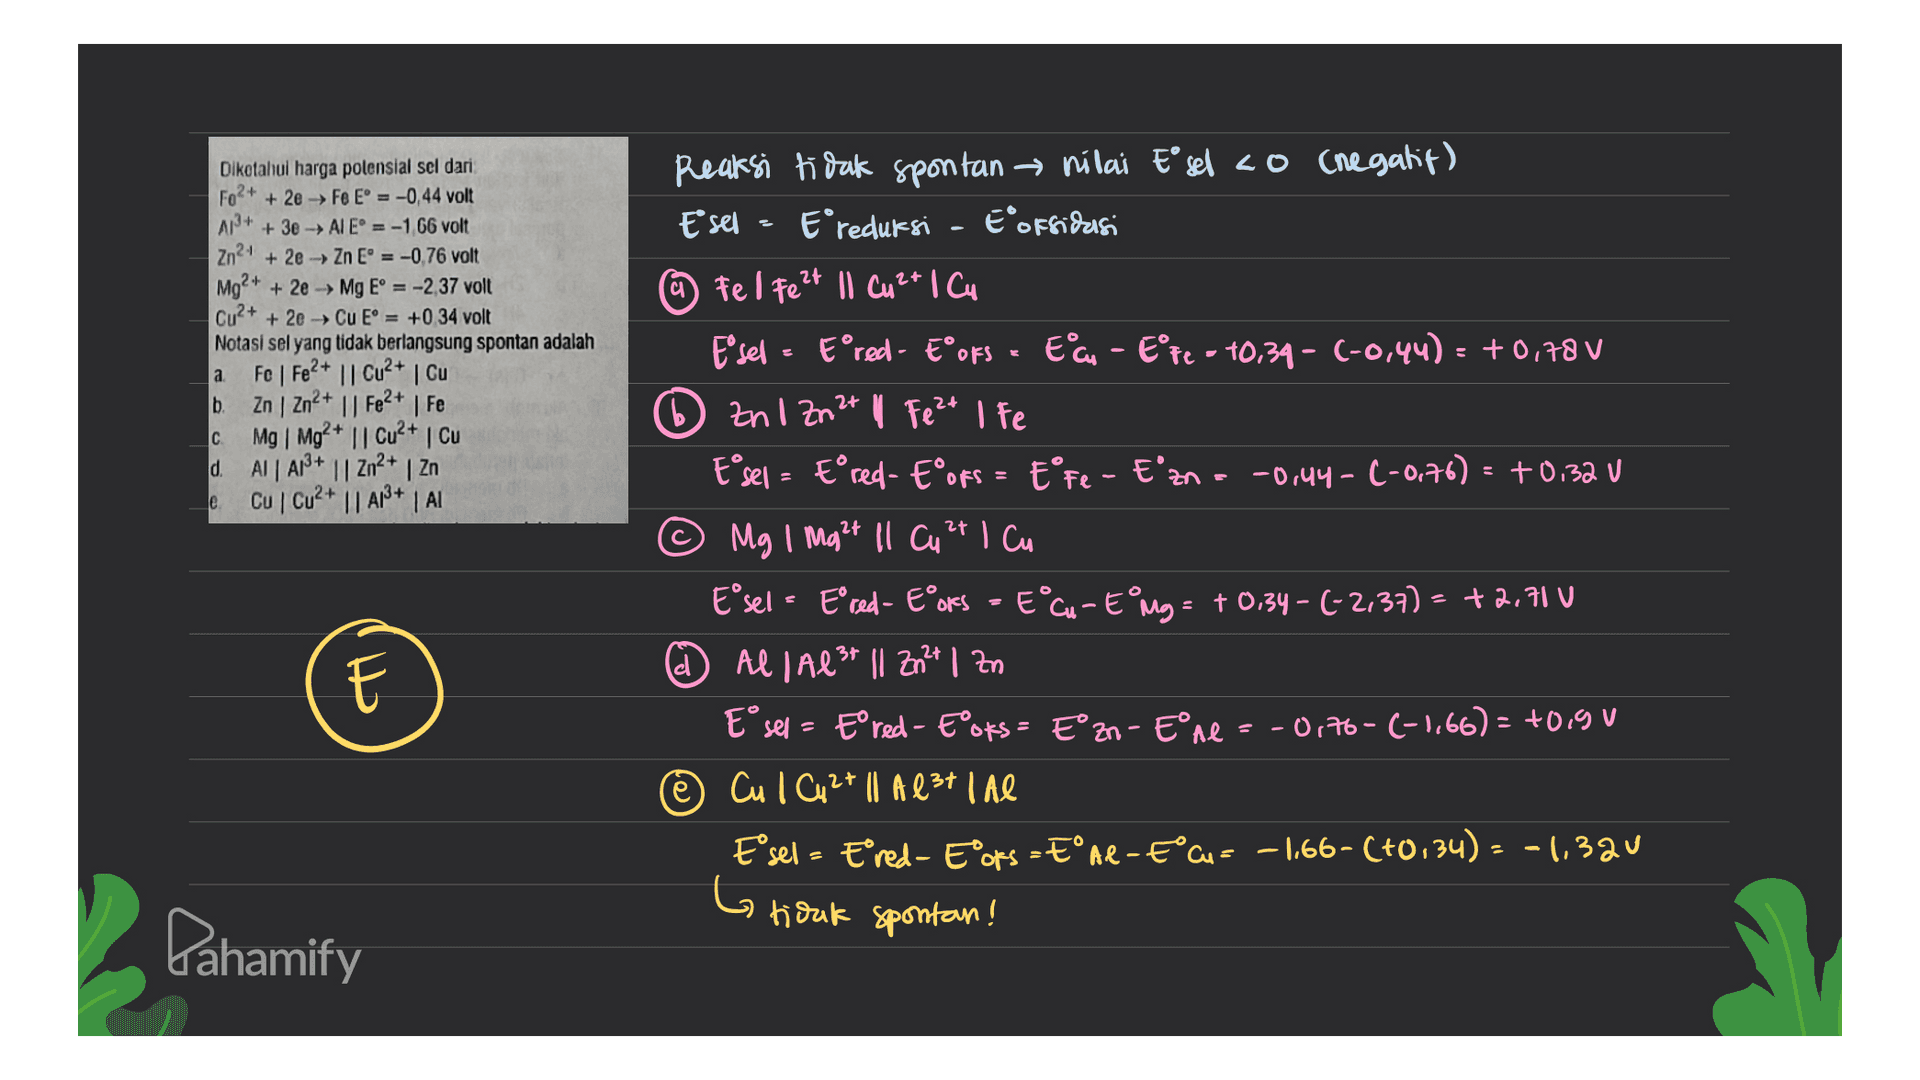 Reaksi tidak spontan → nilai E sel ao (negatif) Esel - Ereduksi - EoFridagi (@ Fel Fe2+ Il Cu2+ 1Cu. Diketahui harga polensial sel dari Fo2+ + 2e → Fe E = -0,44 volt A2+ + 3e → AIE = -1 66 volt Zn2+ + 2e → Zn E = -0,76 volt Mg2+ + 2e → Mg E = -2 37 volt Cu2+ + 2e → Cu E = +0 34 volt Notasi sel yang tidak berlangsung spontan adalah а. FoFe2+ || Cu2+ Cu b. Zn | Zn2+ || Fe2+ | Fe с Mg Mg2+ || Cu2+ Cu d. AI A13+ || Zn2+ | Zn e Cu Cu2+ || A1+A1 Fösel - Eºred - Eºoks - Eau - Eºpe - 10,34 - (-0,44) = +0.78 V Zn1 Zn2+ || Fe 2+ I Fe E°sel = Eºred- Eºofs = EºFe - E'zn = -0,44 - (-0.76) = +0.32 V © Mg 1 Mg²+ ll Cu 2+ 1 cu Eºsel - Eºred - Eºors - E°Cu - EⓇMg = + 0.34 - (-2,37) - +2.71 v d @ All Al3+ || Zn2+ 1 Zn Eºsel - Eºred - EºOks = E°2n- Eºne = -0,76-(-1,66) = +0.9 V Cul Cu 2+ || A est lae Eºsel - Ered - Eºoks - EºAl-€°Cu = –1,66-(+0,34) = -1,320 tidak spontan! Do Go Pahamify 